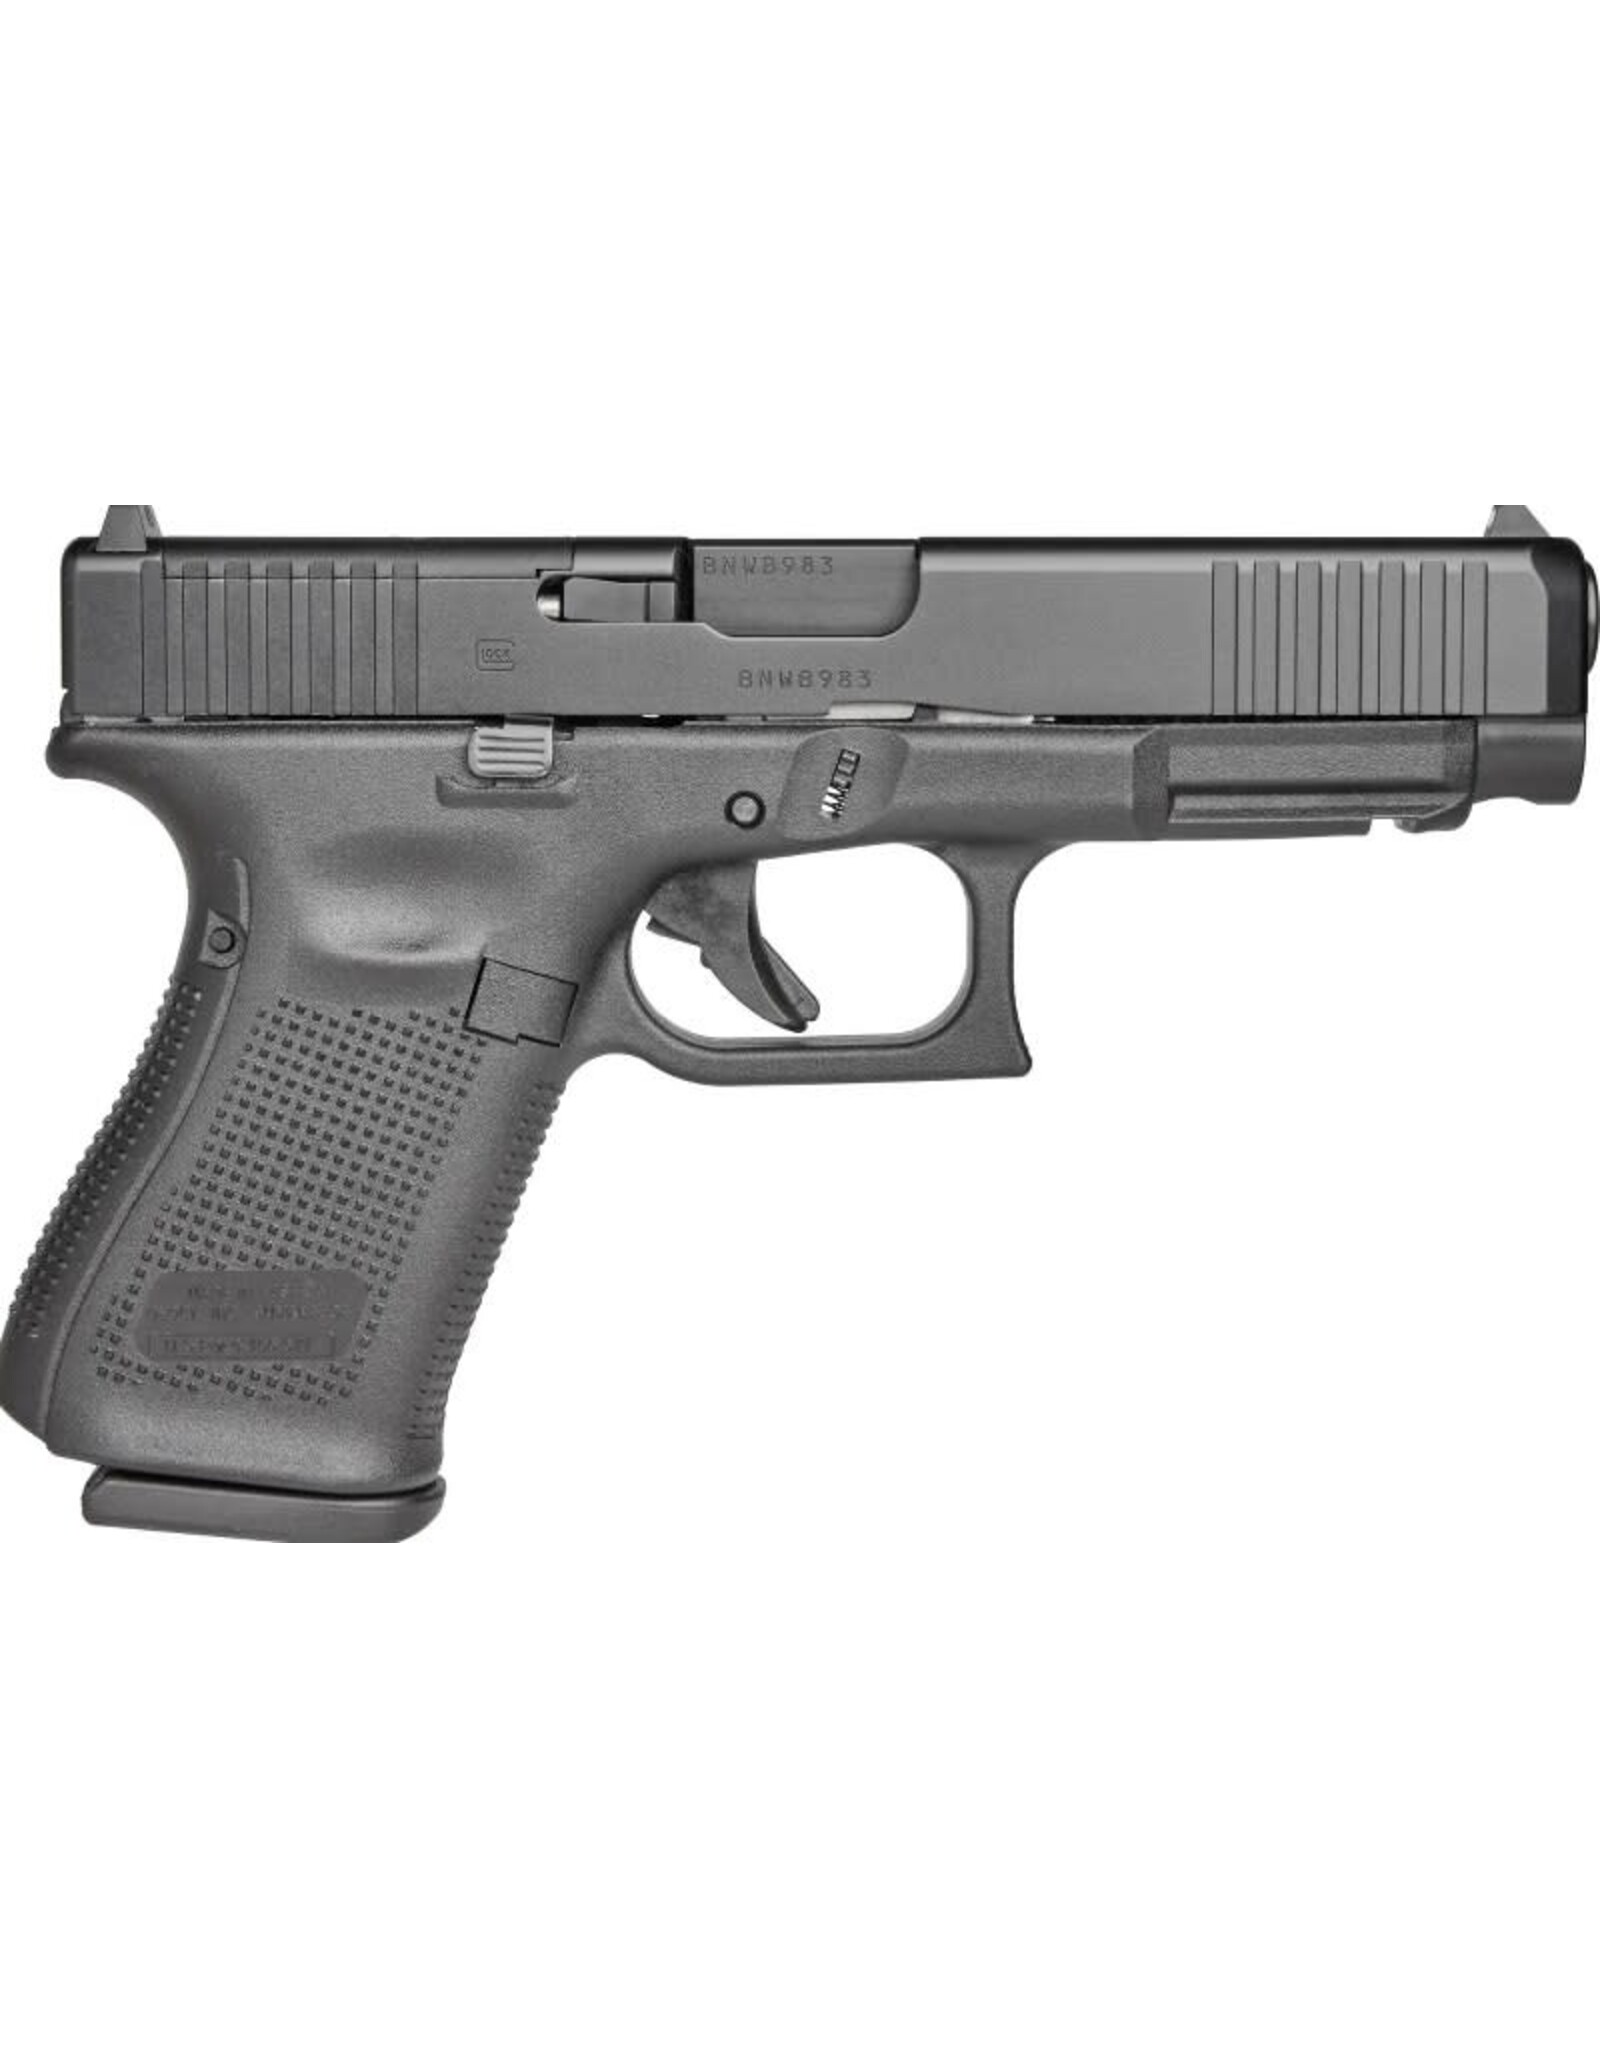 Glock 49 - MOS - 9mm 4.49" bbl 15+1 Round